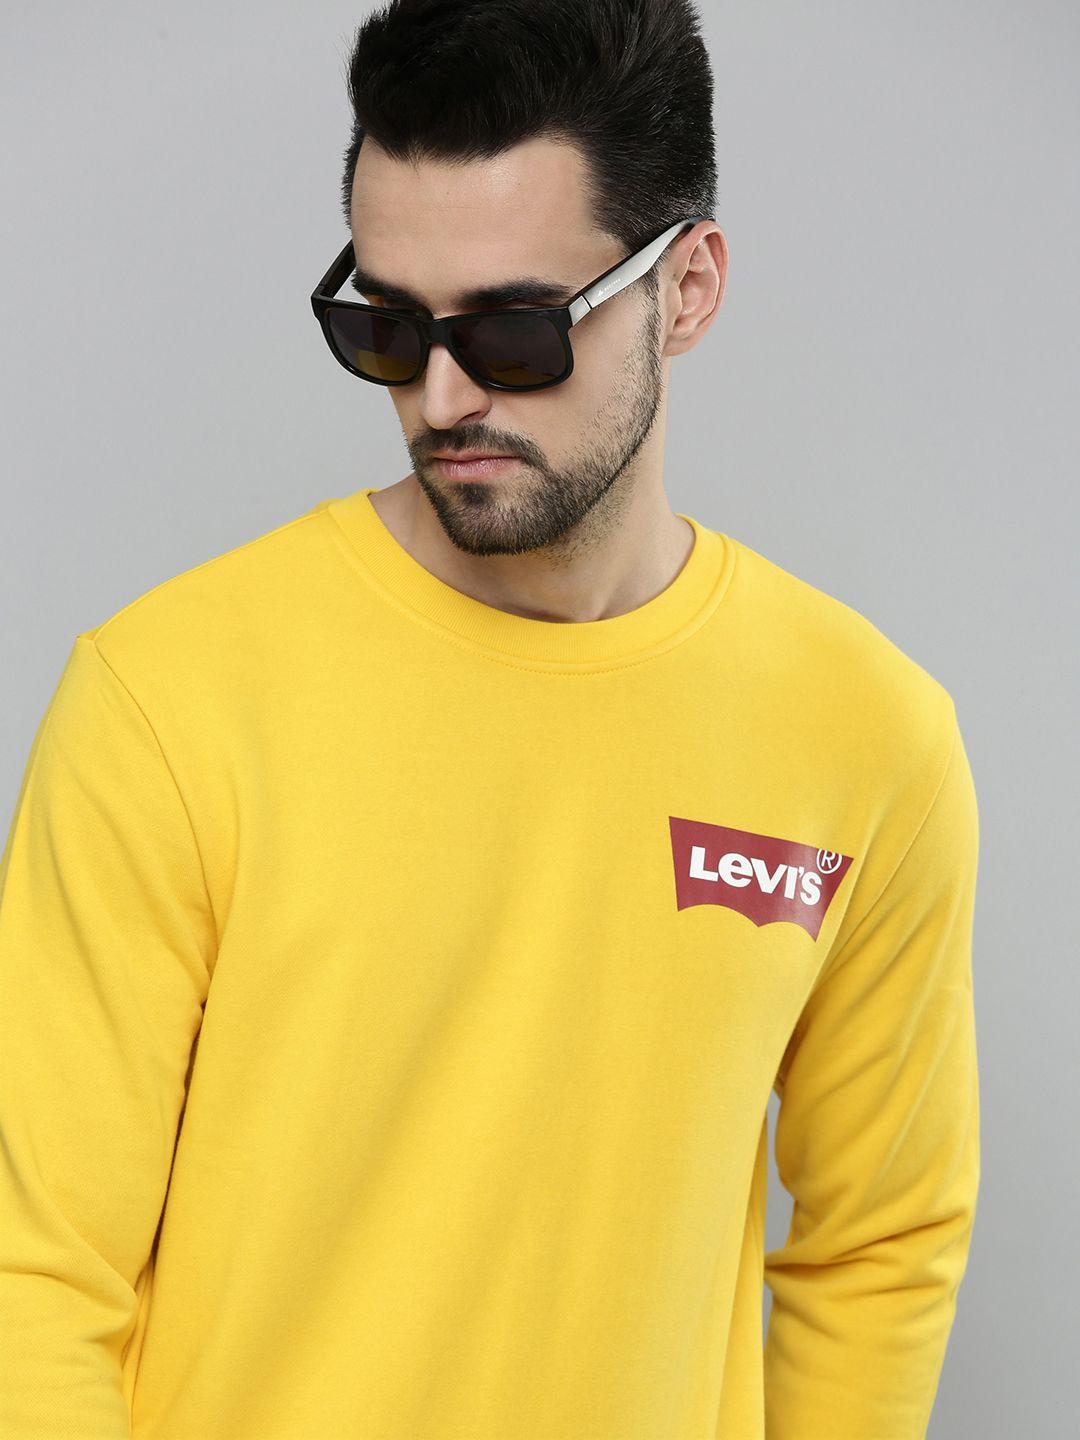 levis-men-yellow-printed-sweatshirt